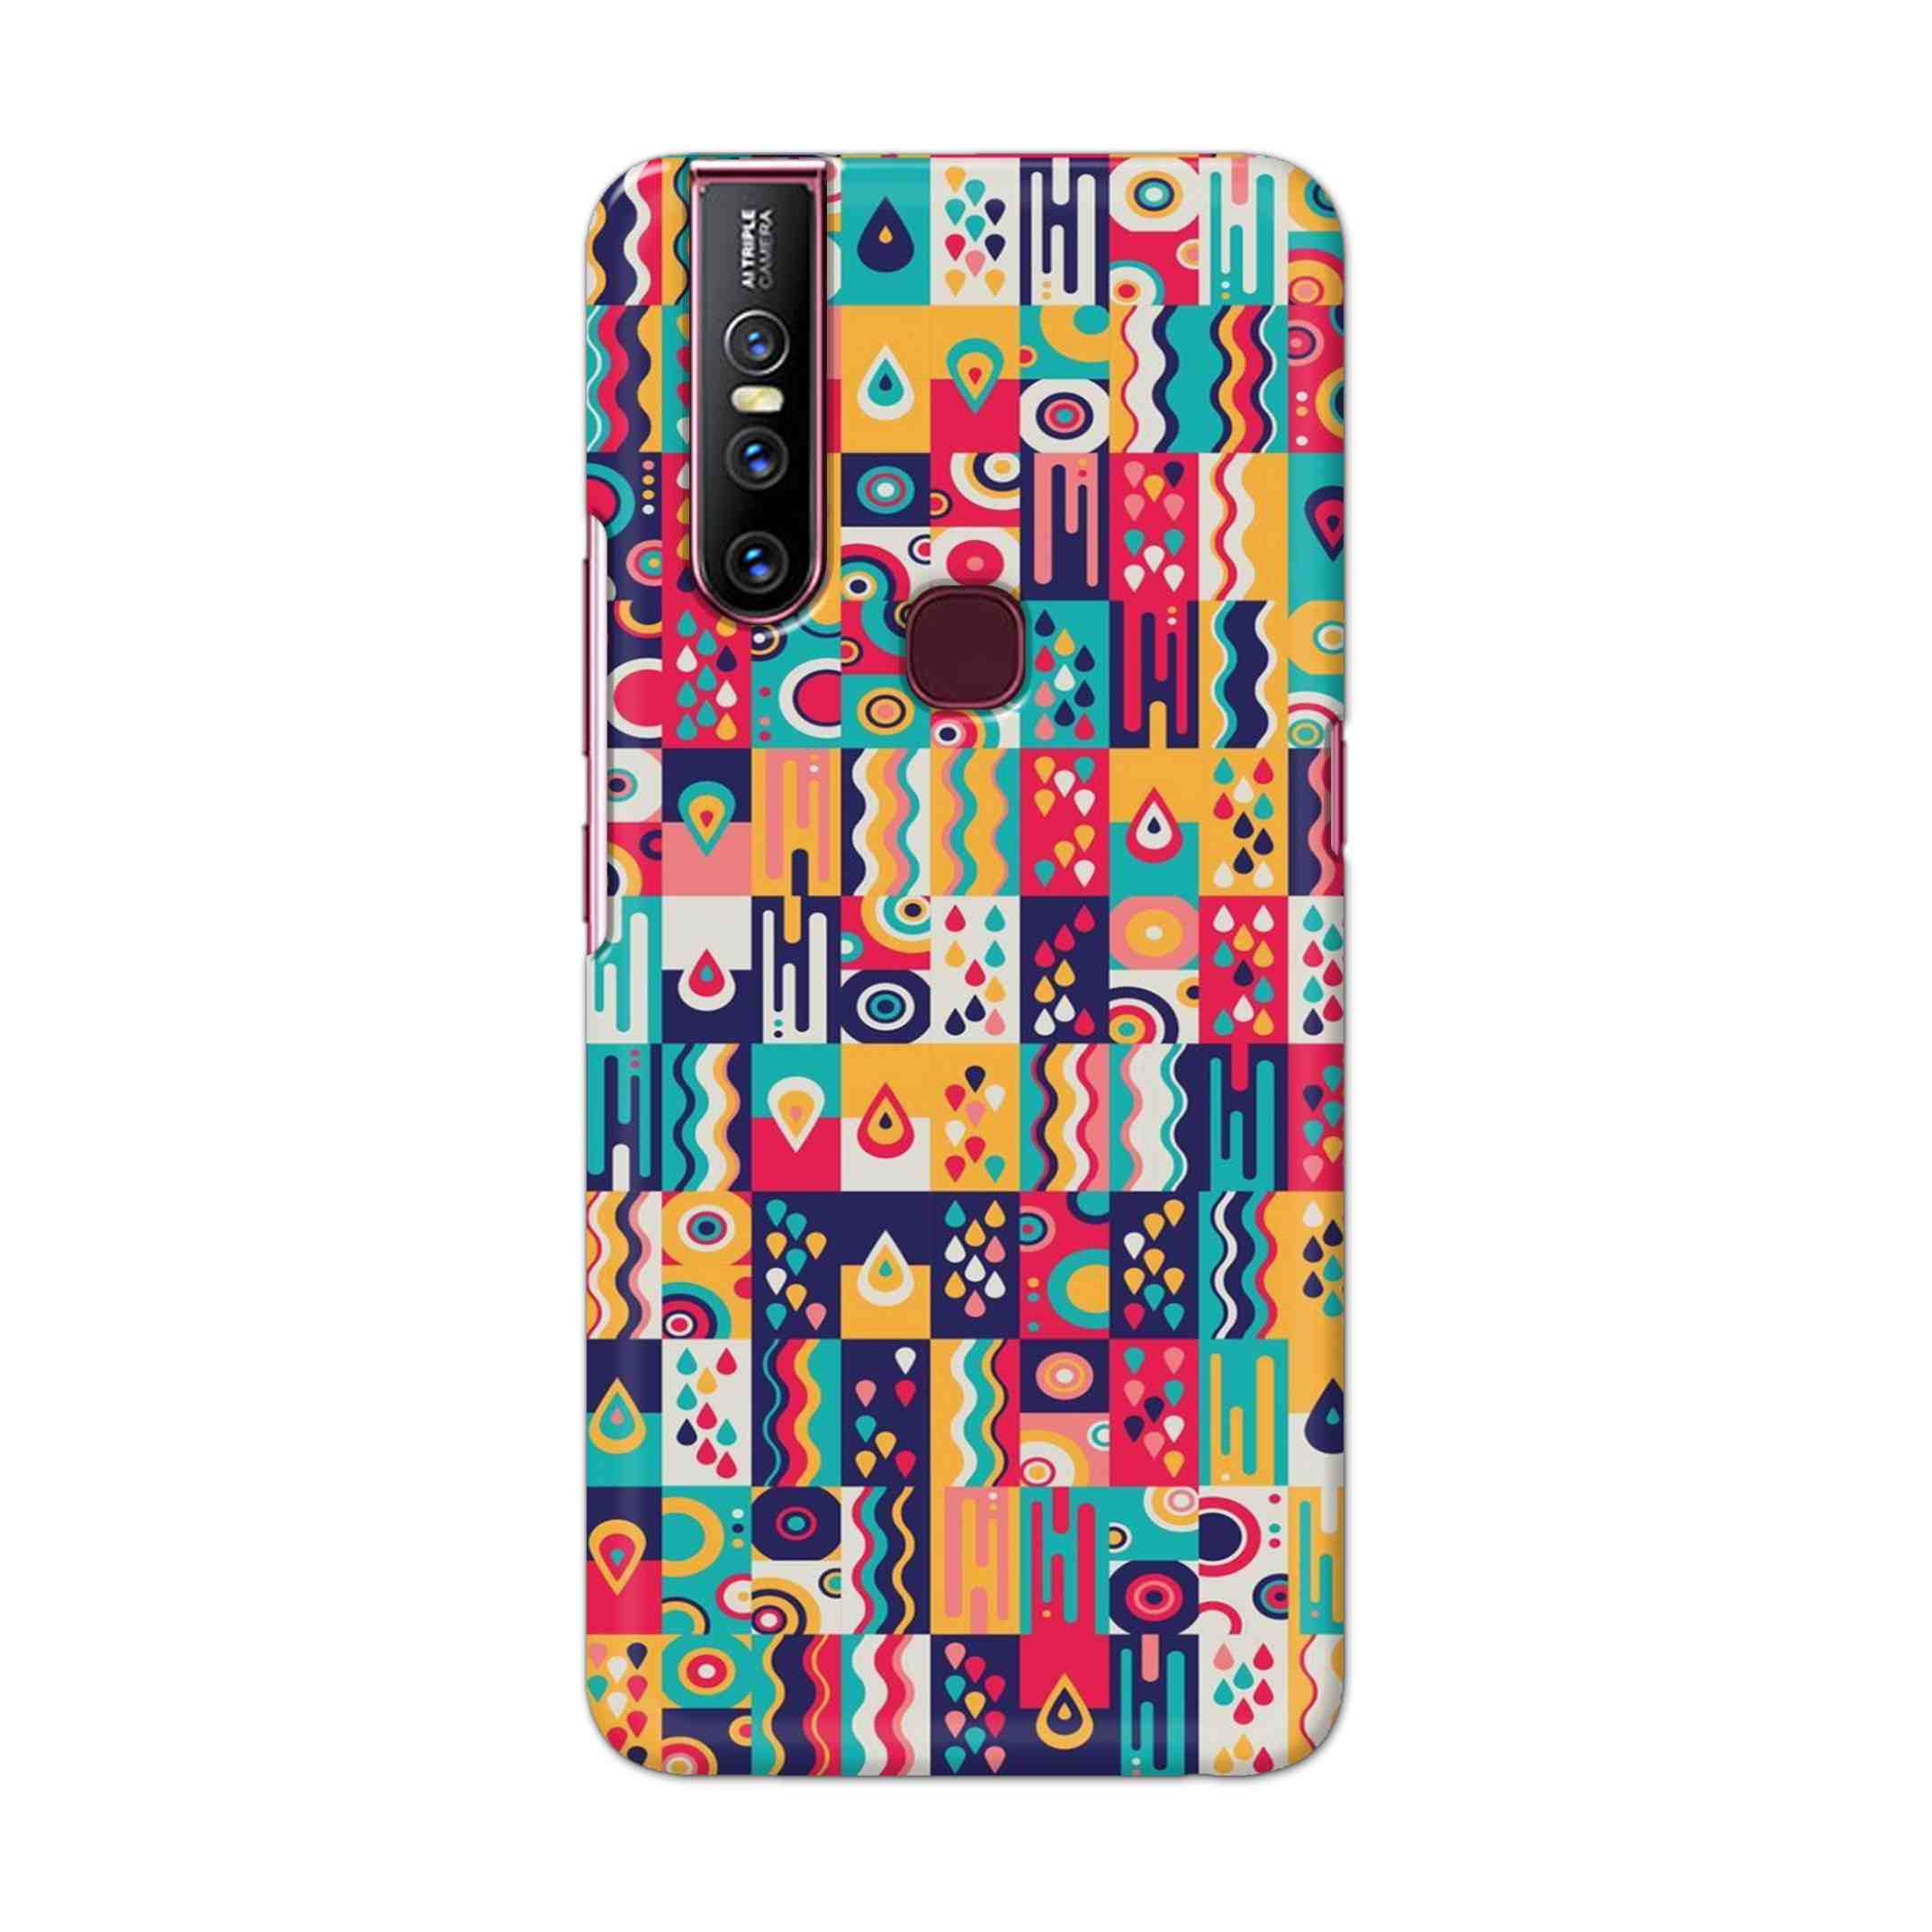 Buy Art Hard Back Mobile Phone Case Cover For Vivo V15 Online